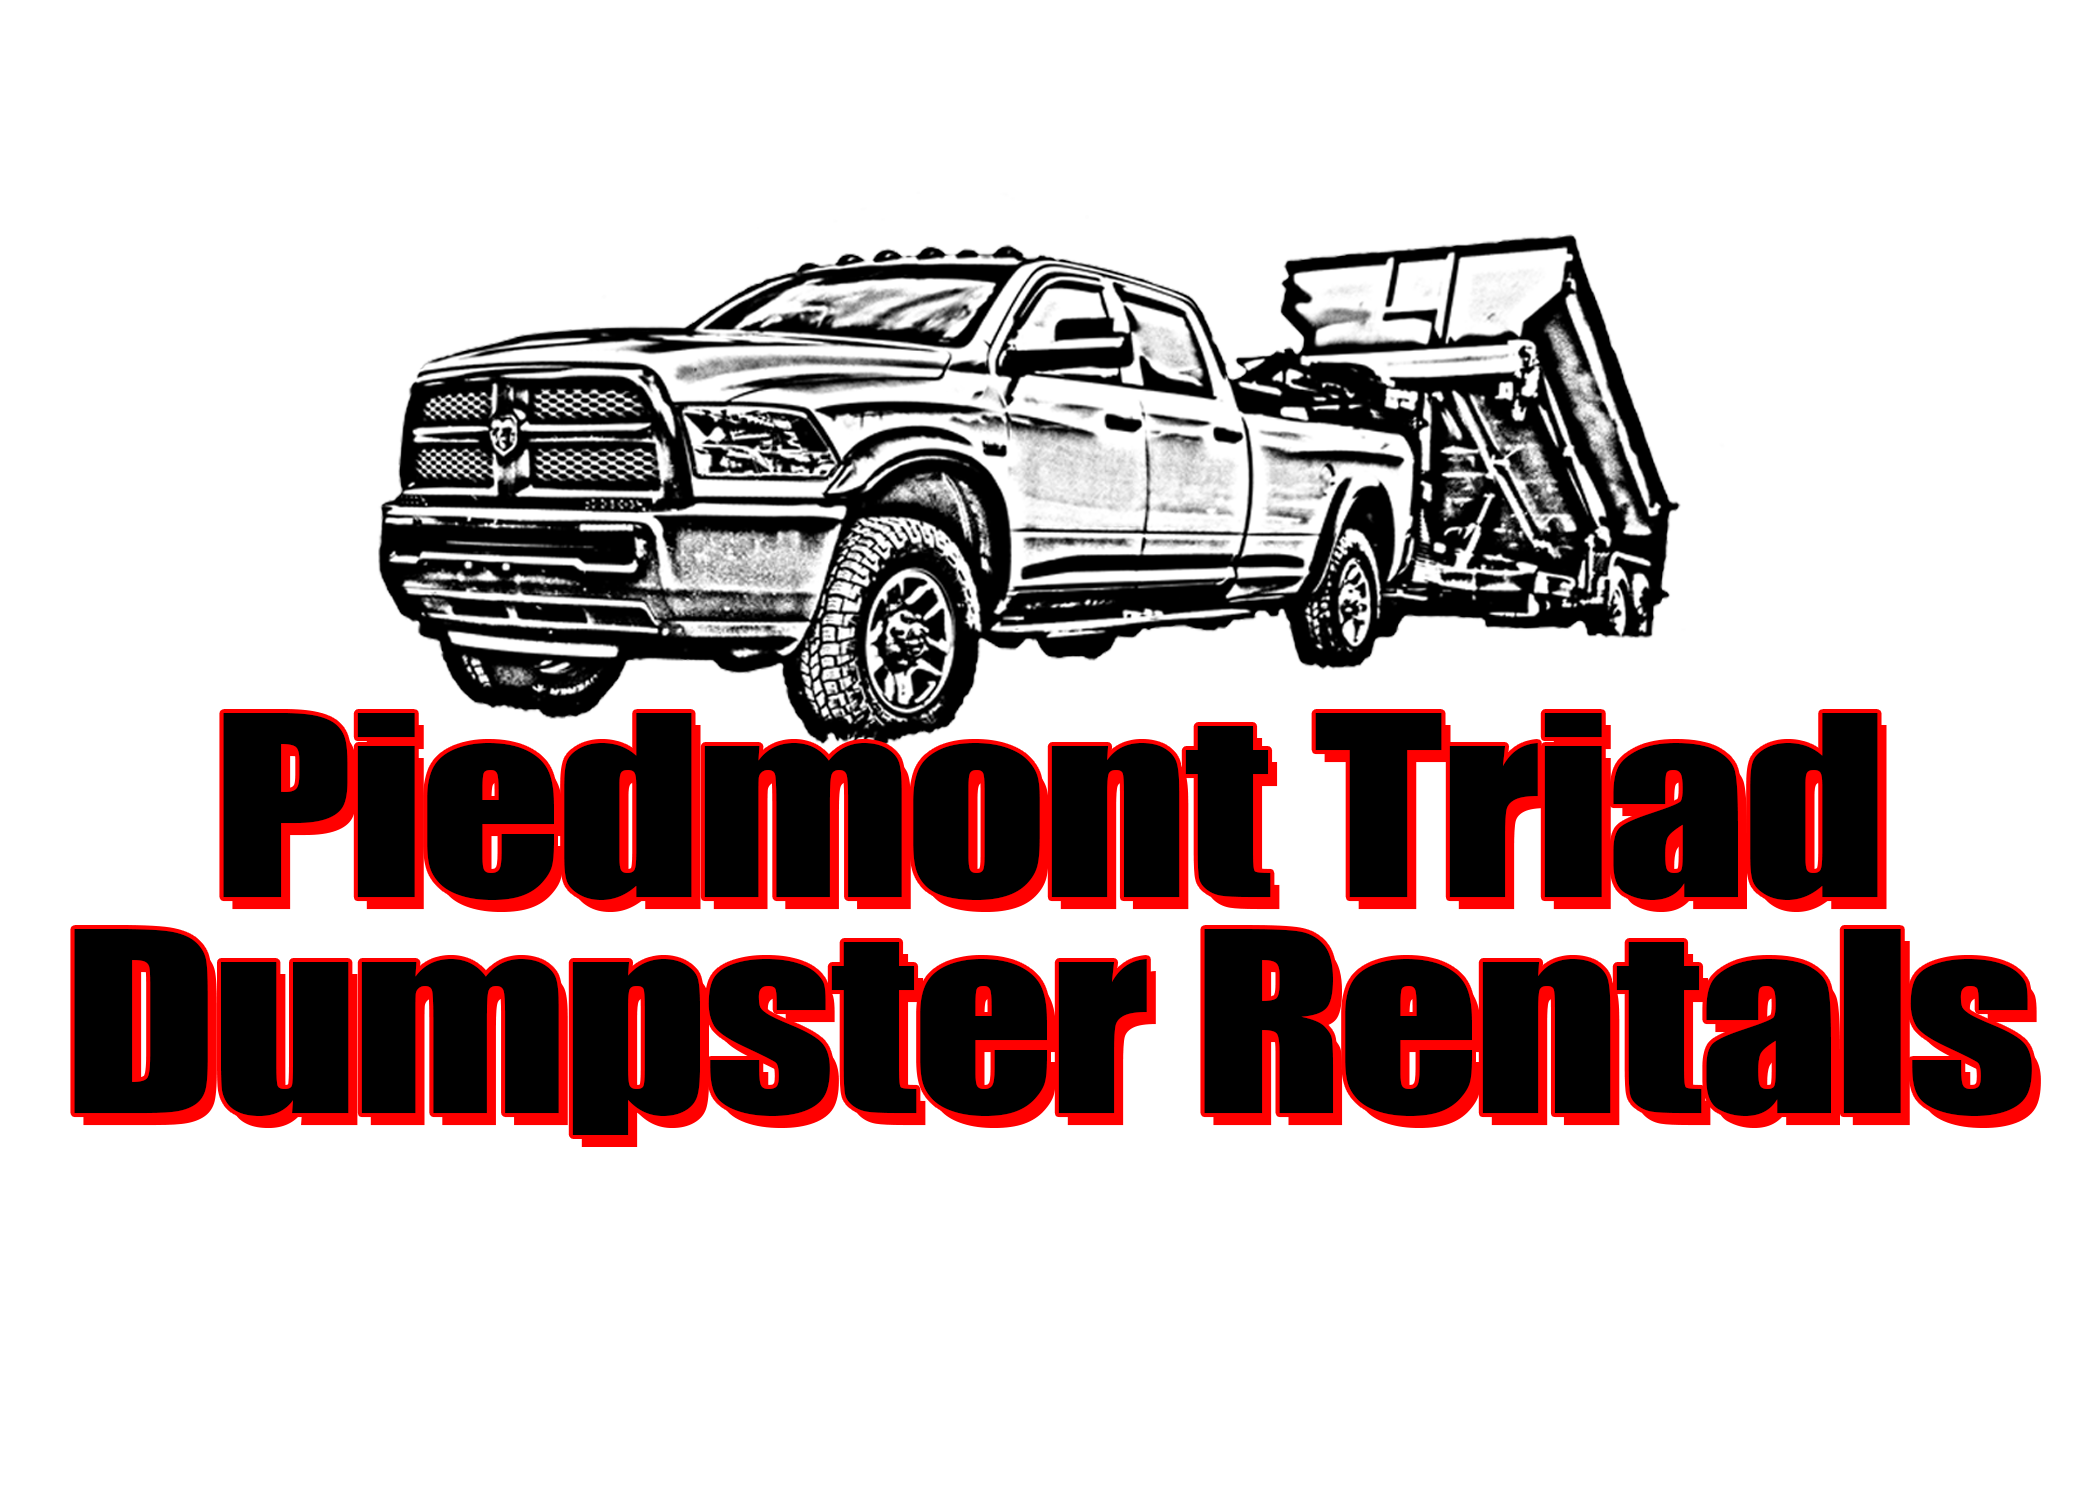 Piedmont Triad Dumpster Rentals